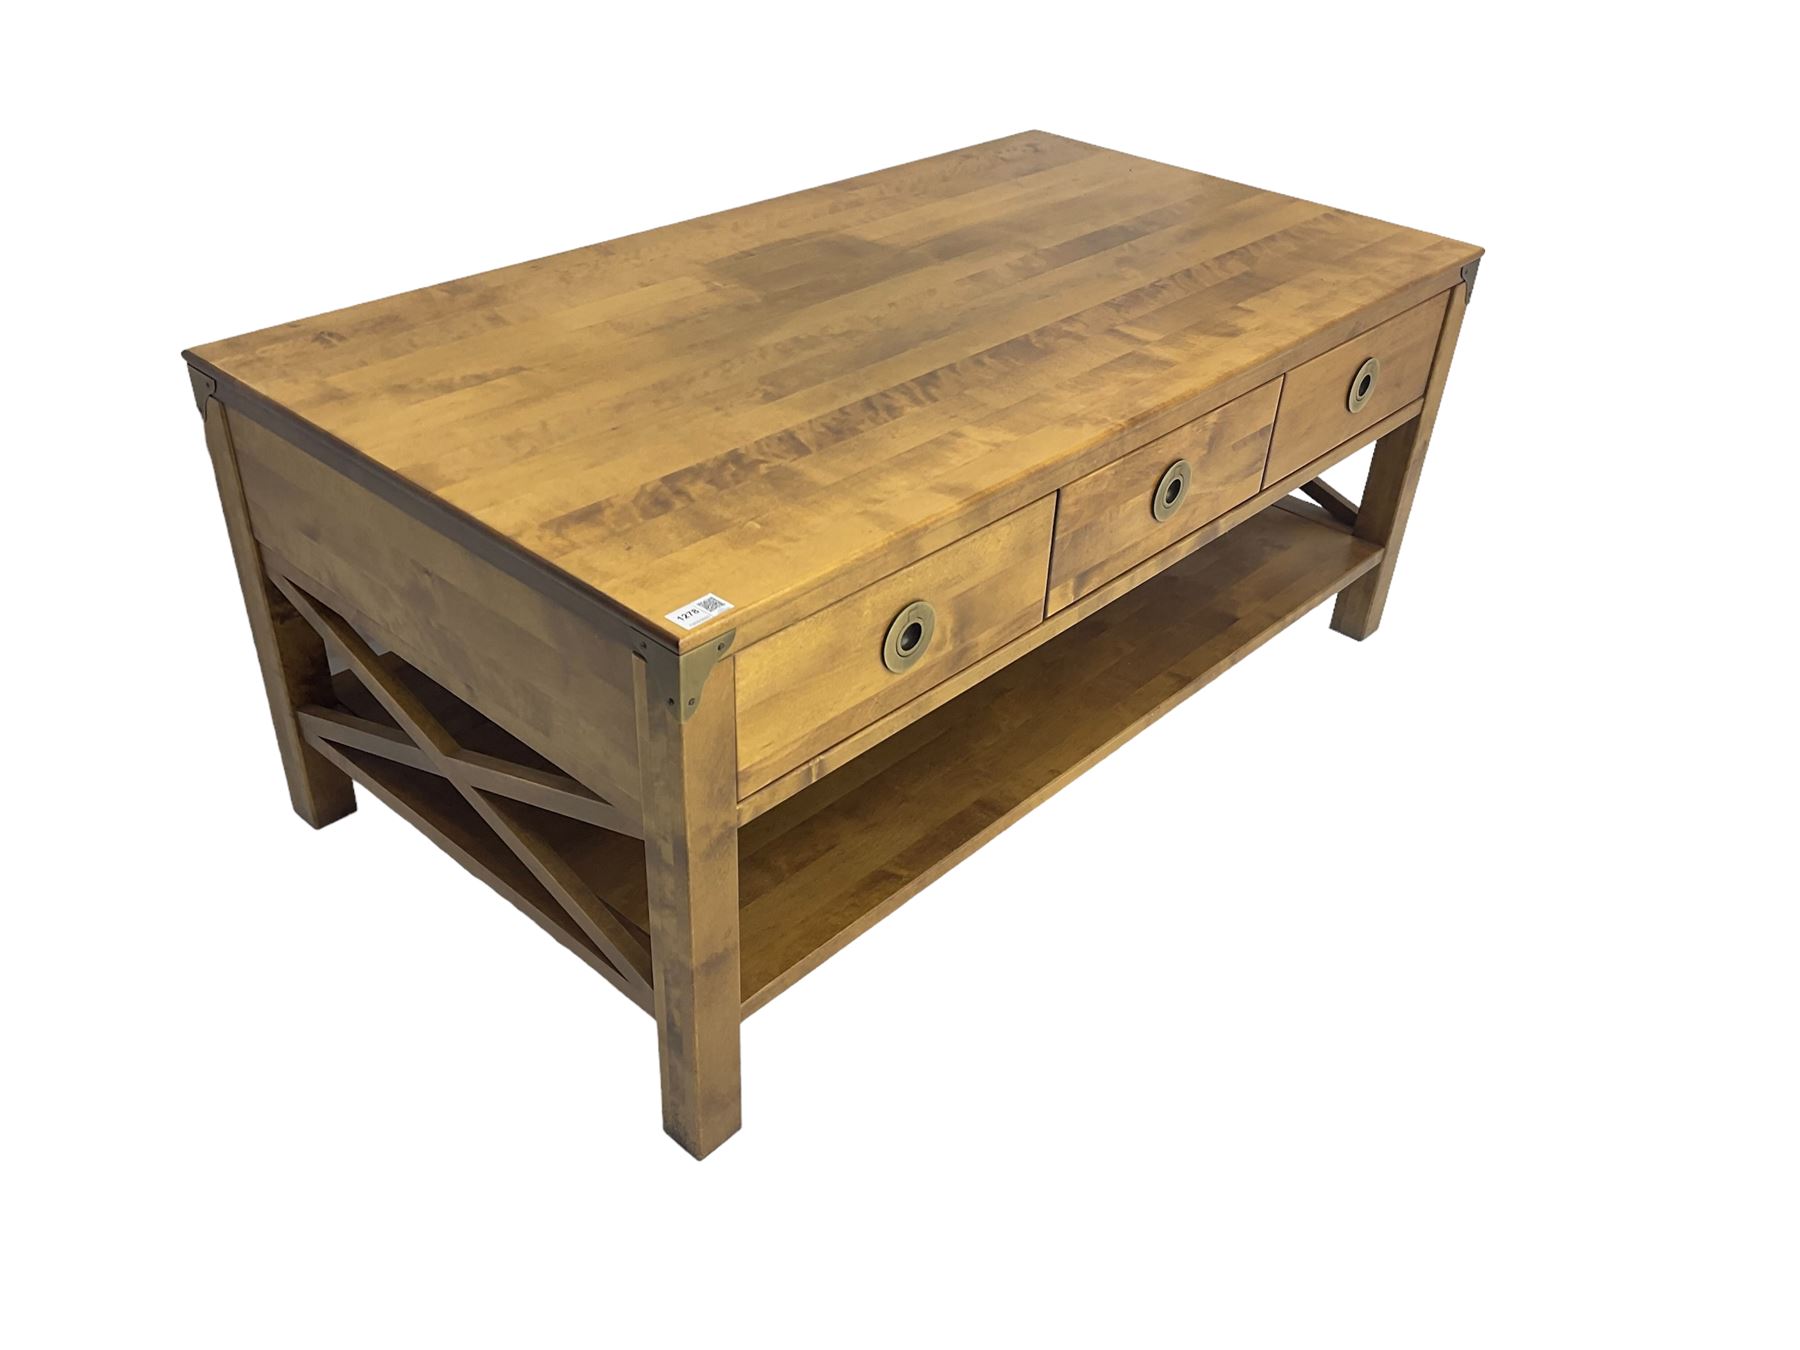 Rectangular hardwood coffee table - Image 3 of 6